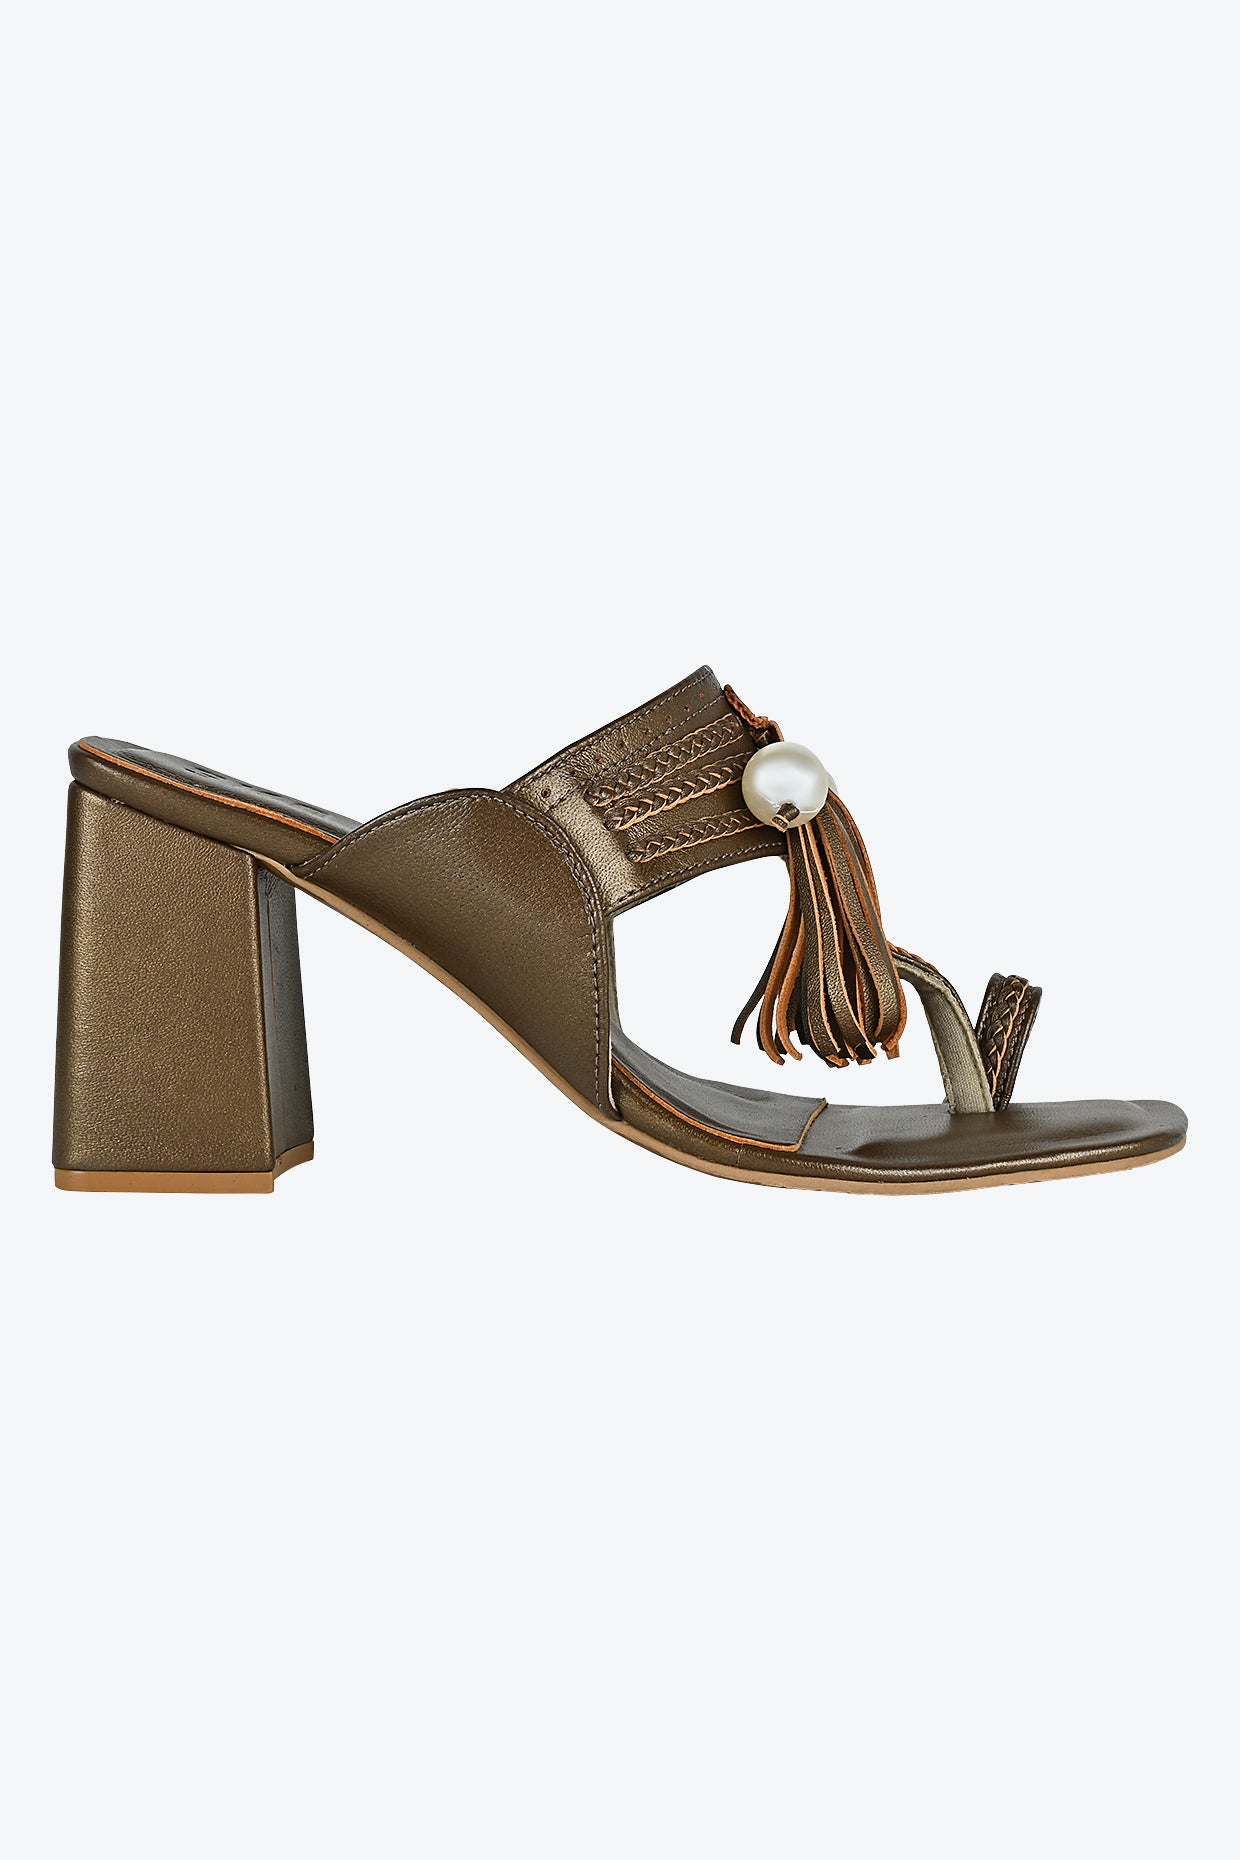 Bronze Kolhapuri Heel For Women